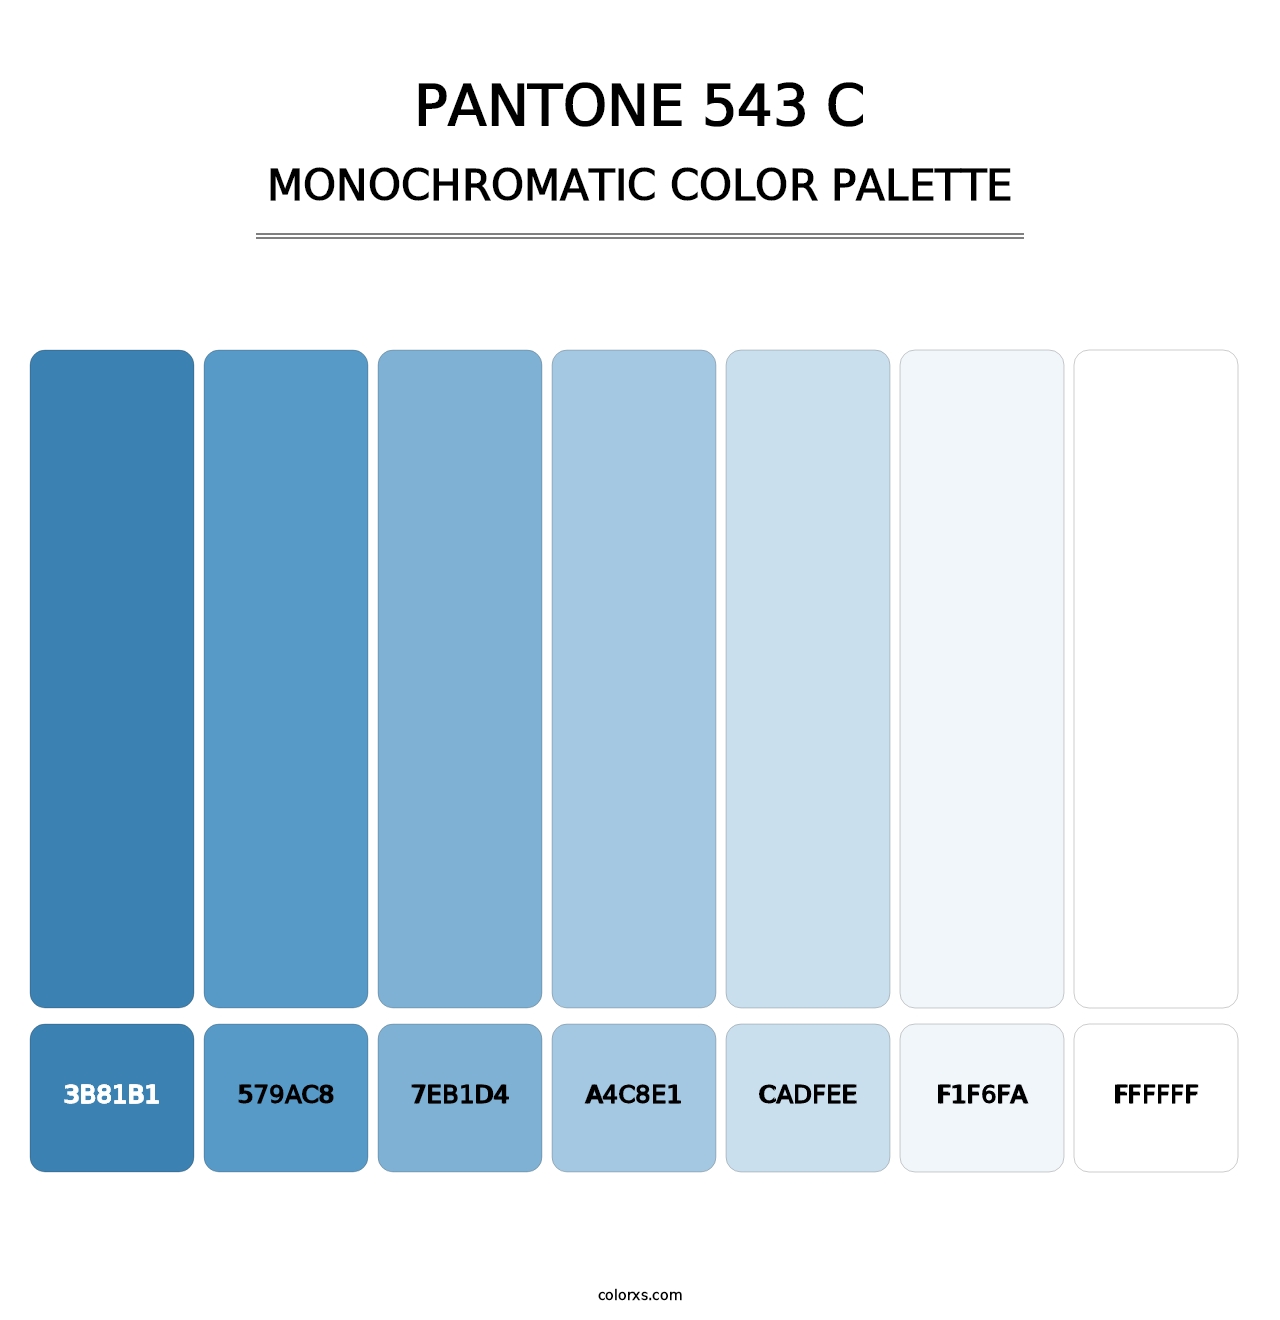 PANTONE 543 C - Monochromatic Color Palette